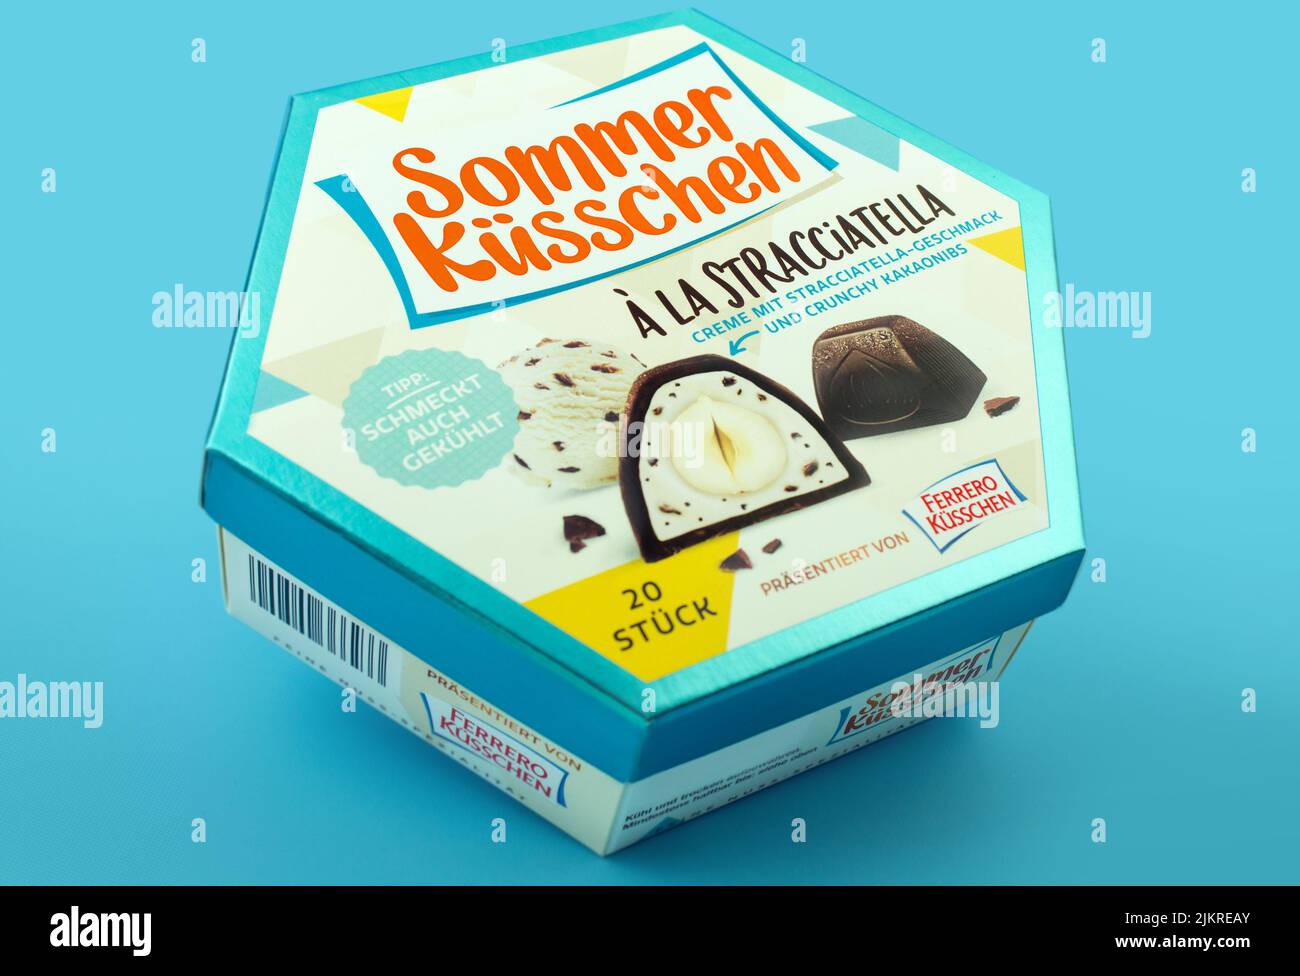 Ferrero Küsschen Stracciatella mit Verpackung Foto de stock